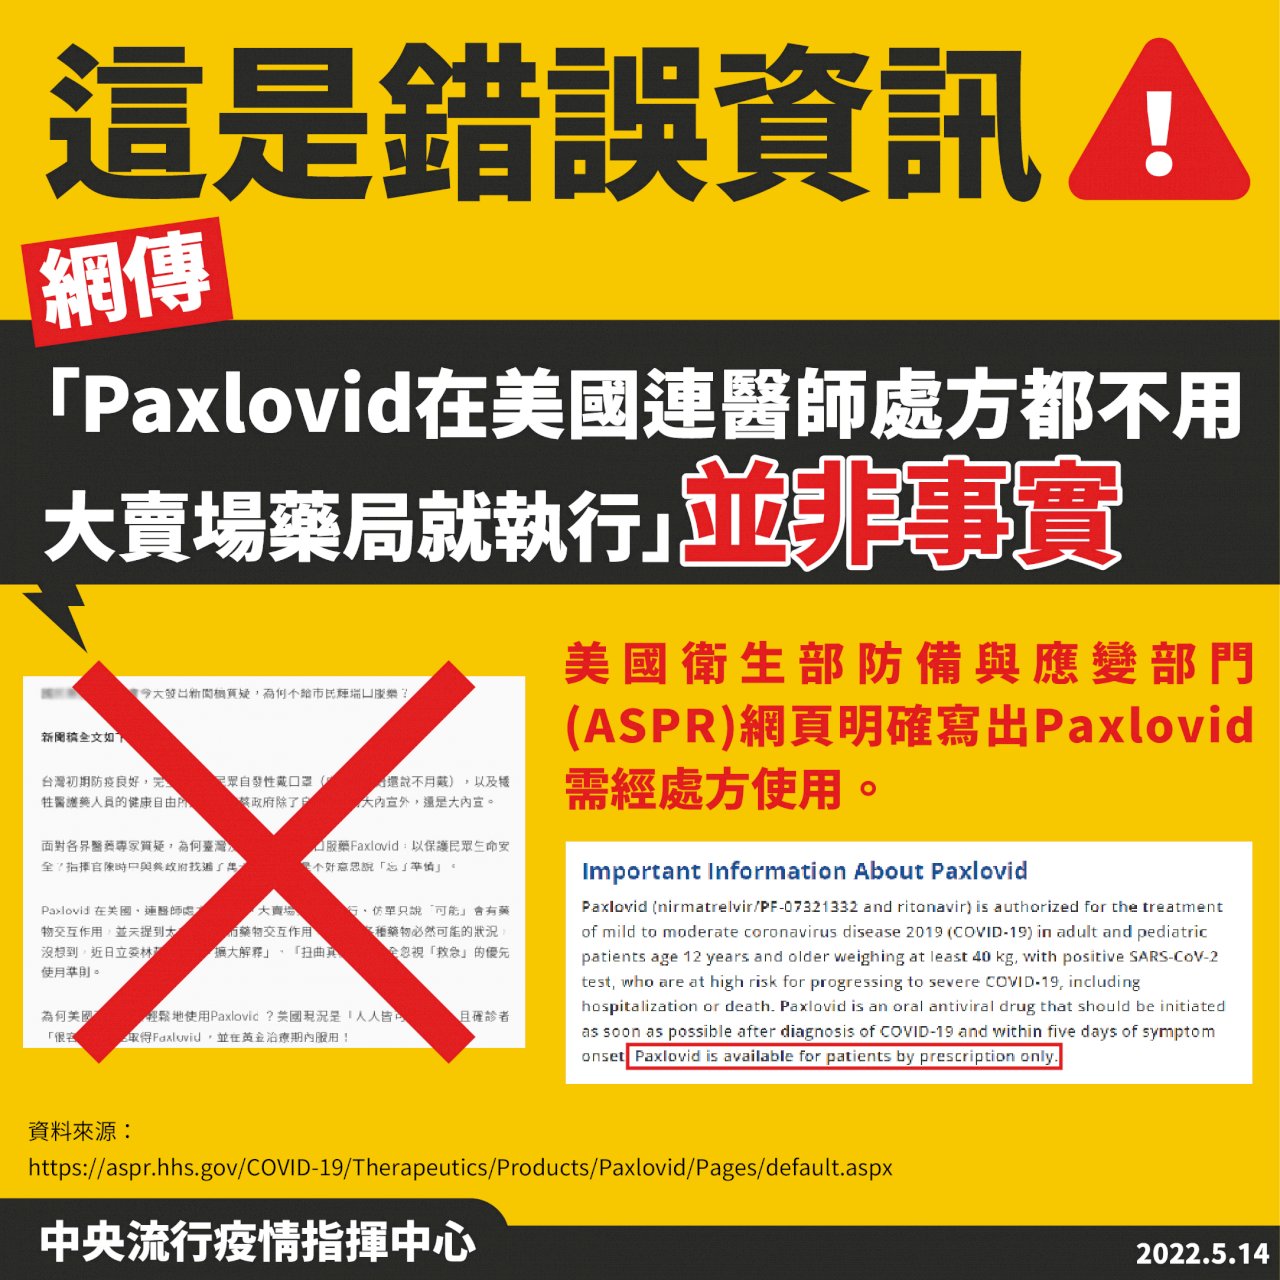 指揮中心澄清：網傳「輝瑞Paxlovid不需醫師處方箋即可於大賣場購買」並非事實